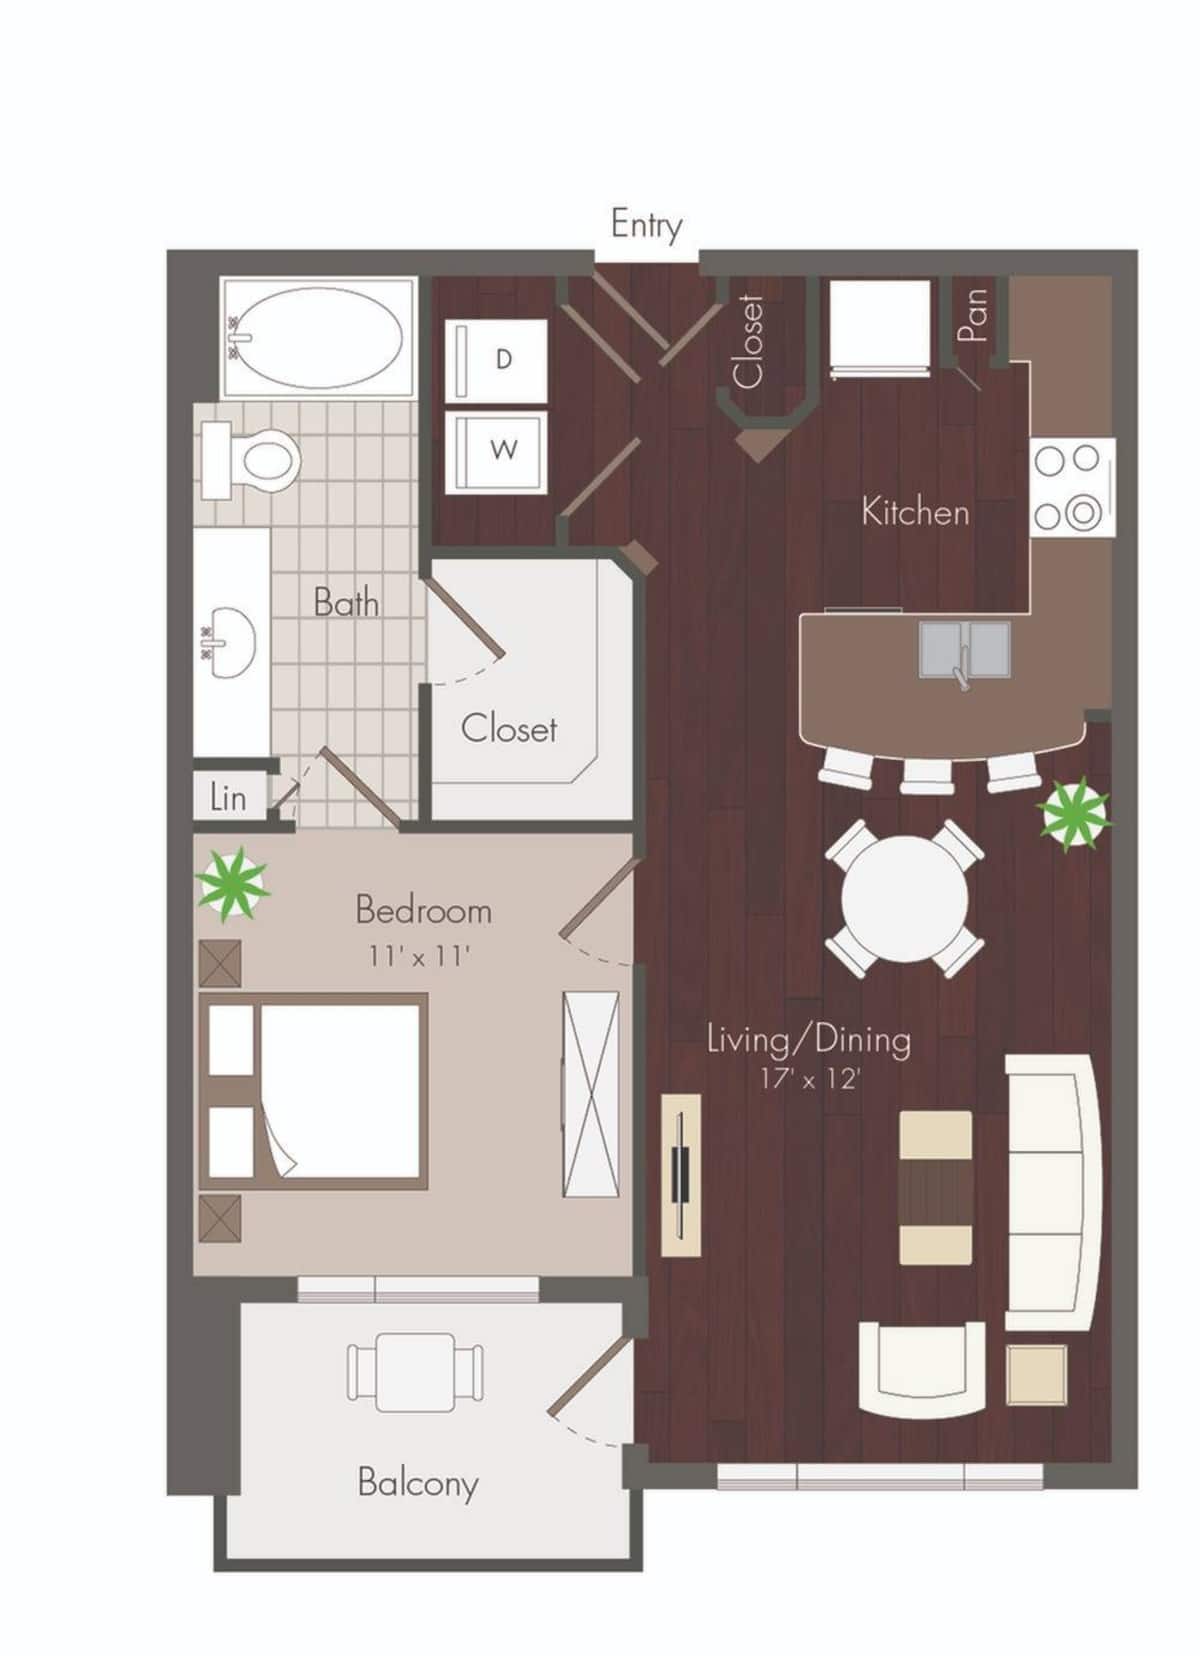 Floorplan diagram for Birdsall, showing 1 bedroom